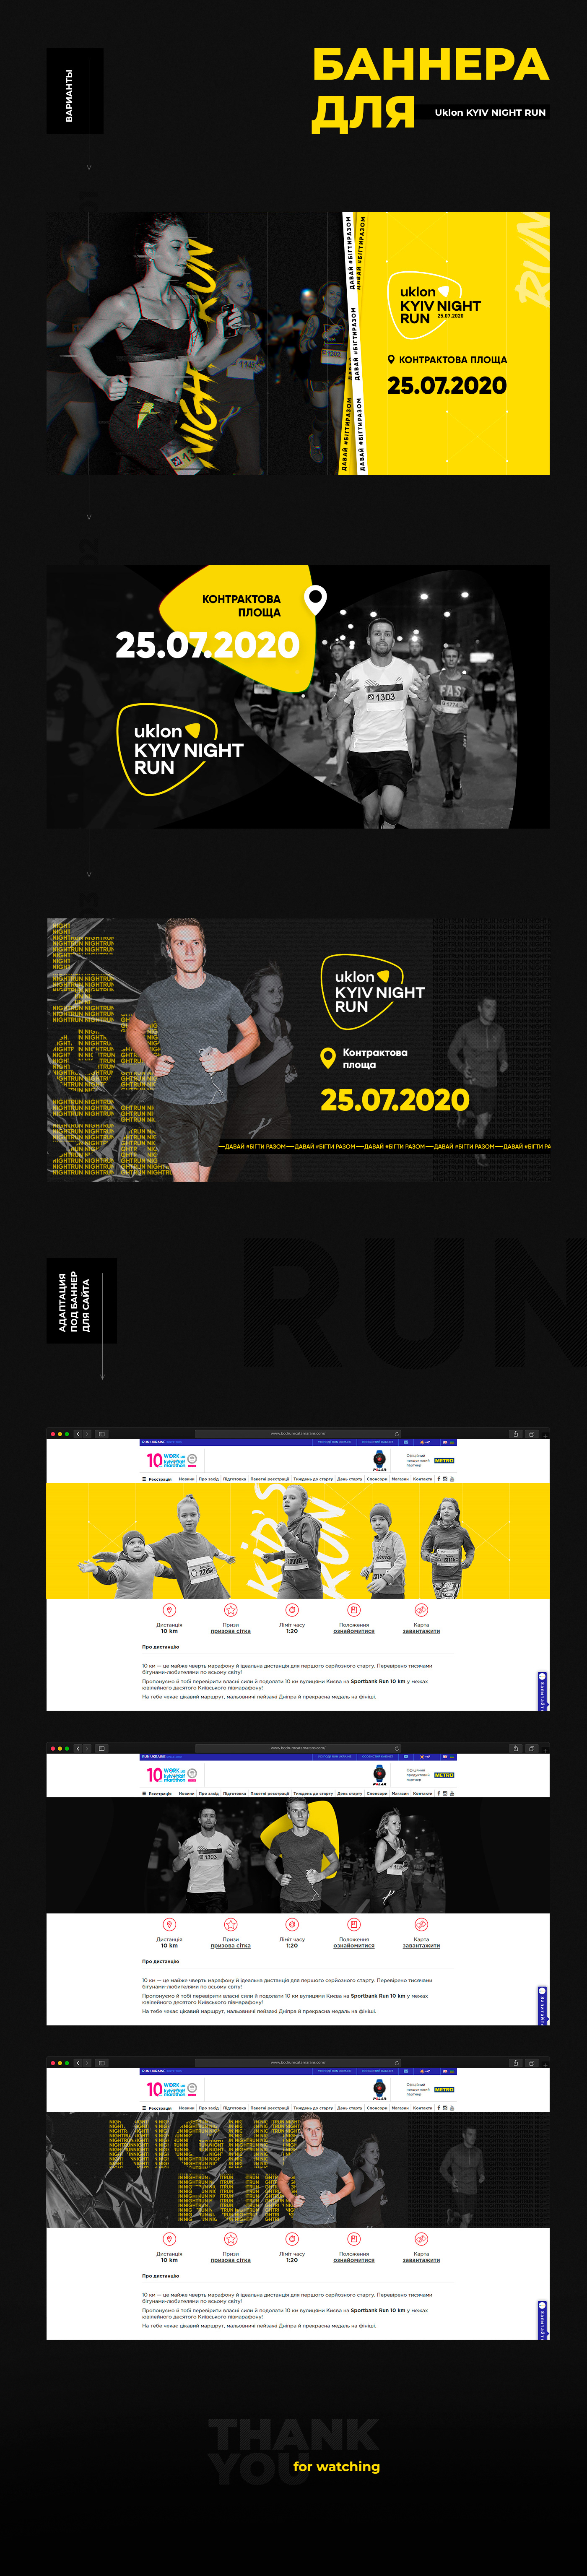 banner design graphicdesign run runukraine webbanners Webdesign halfmarathon Marathon sport